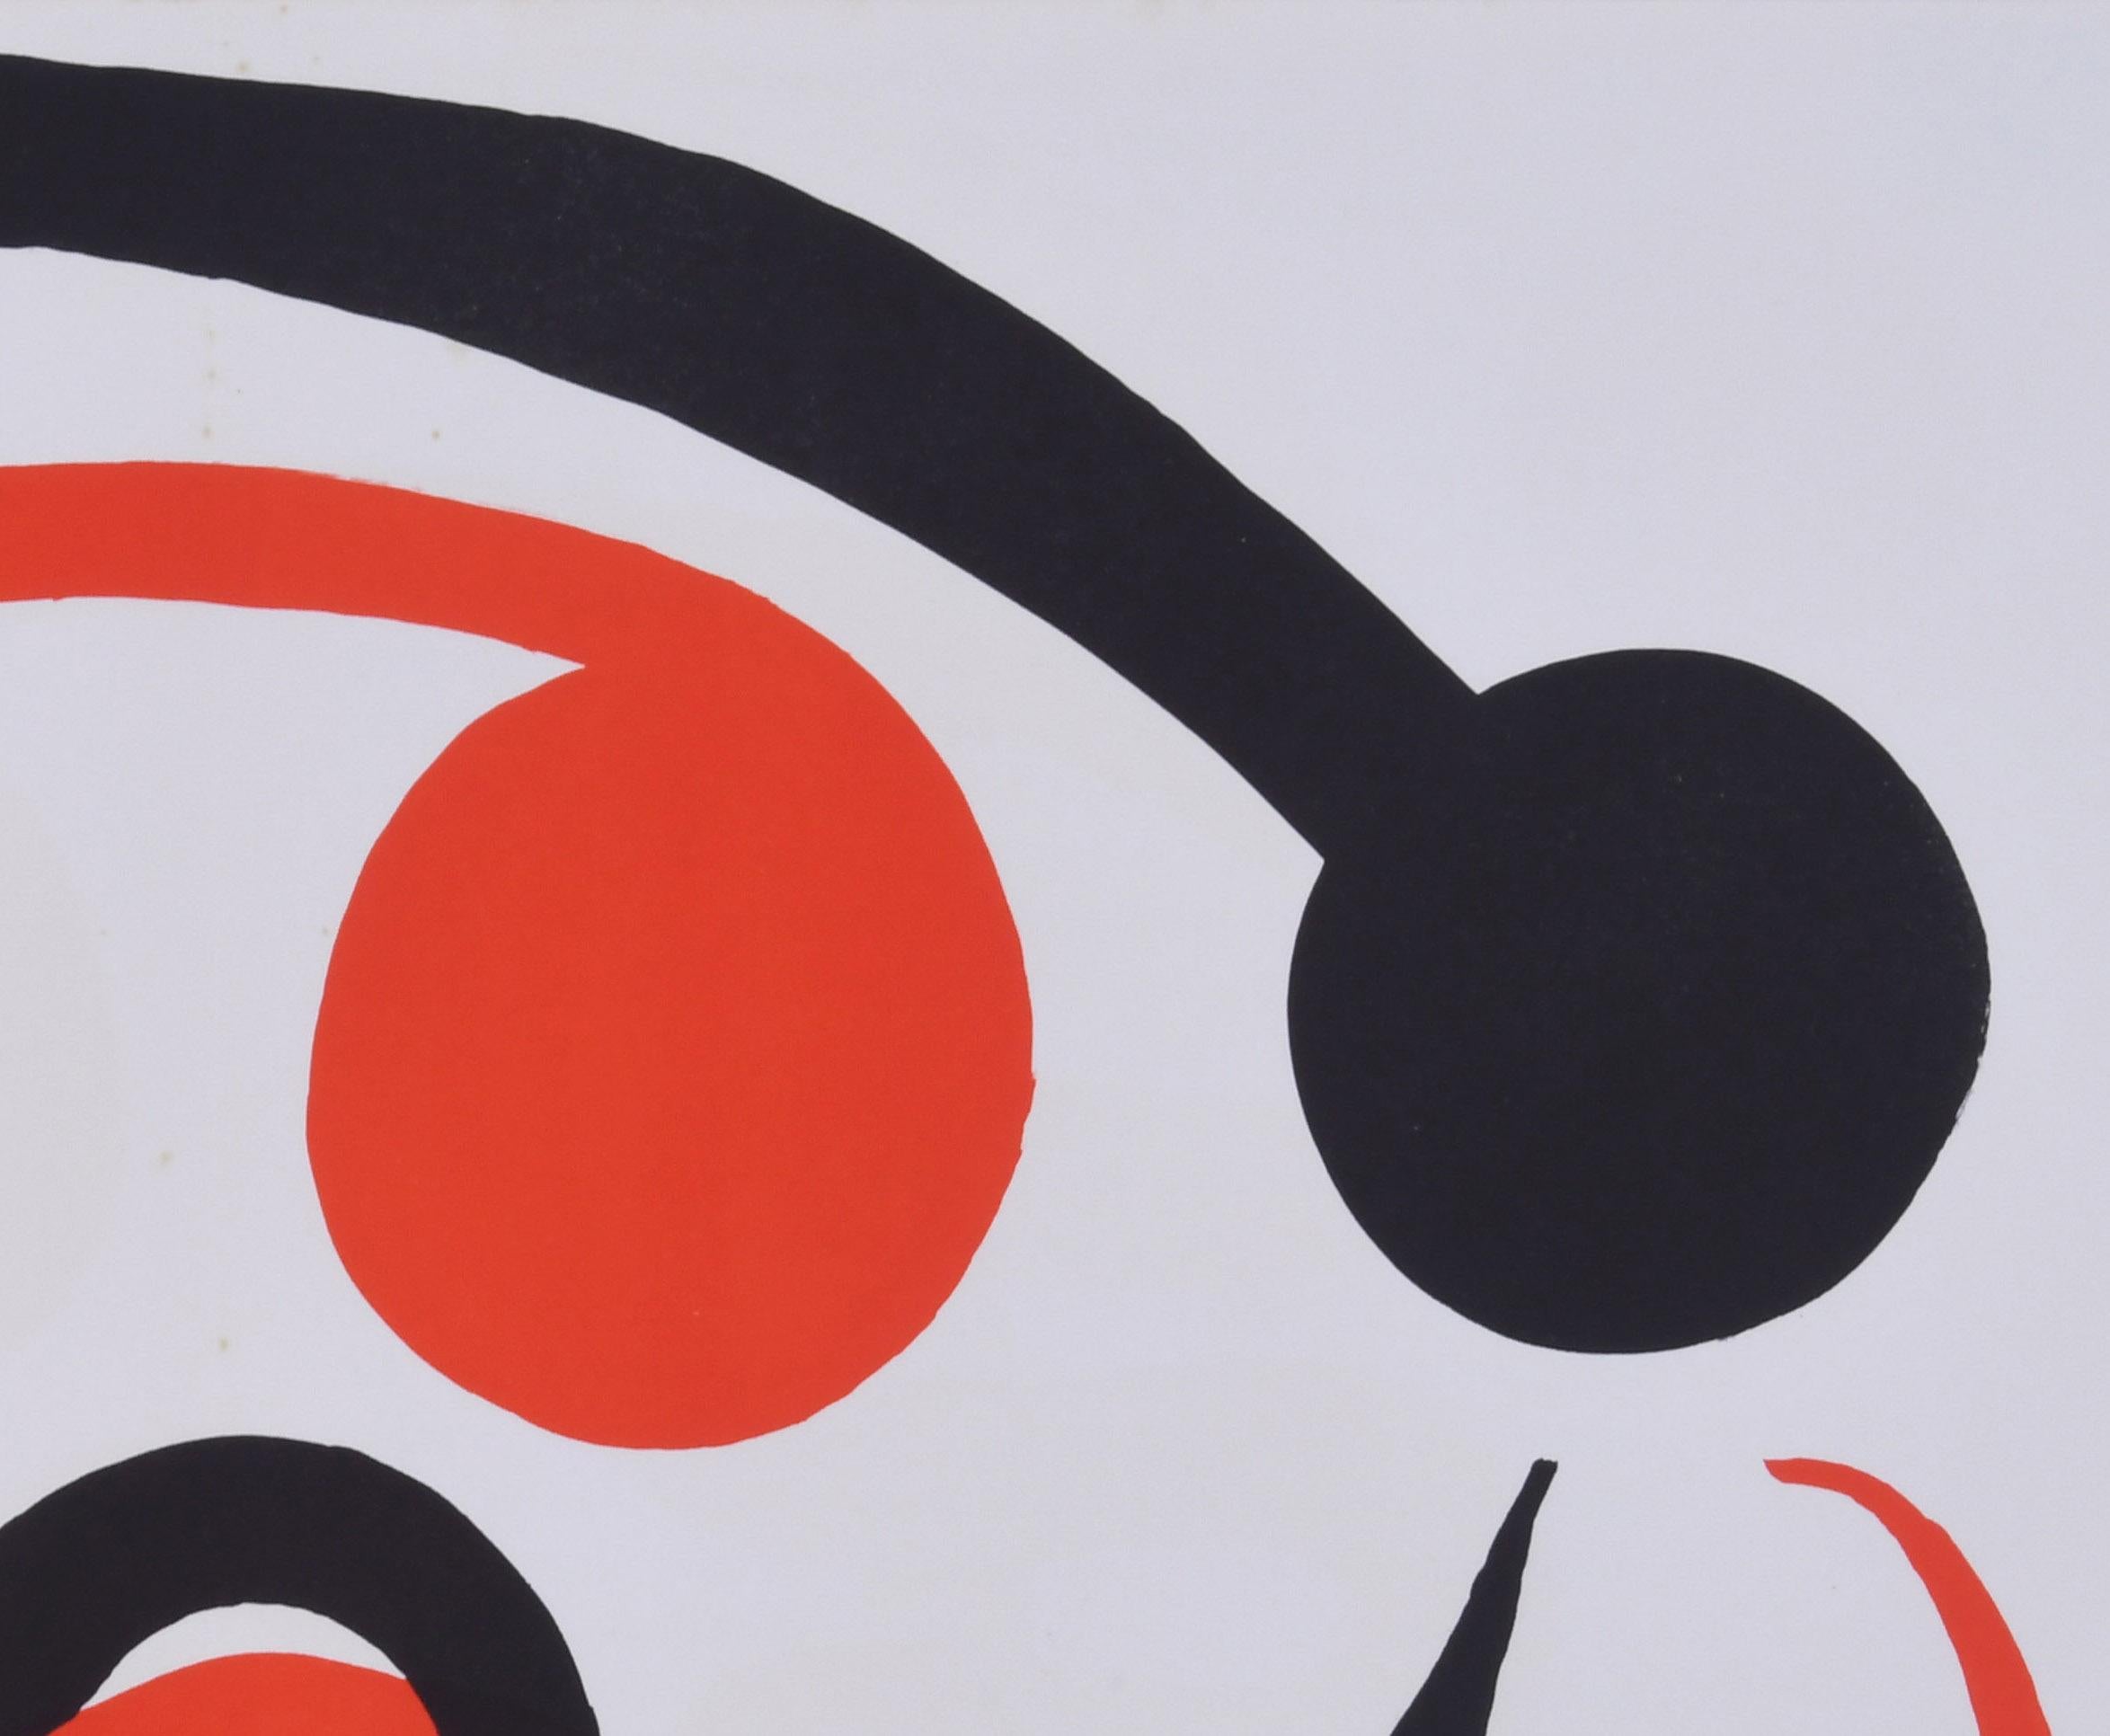 Derriere Le Miroir - Seite 6-7 (Abstrakt), Print, von Alexander Calder